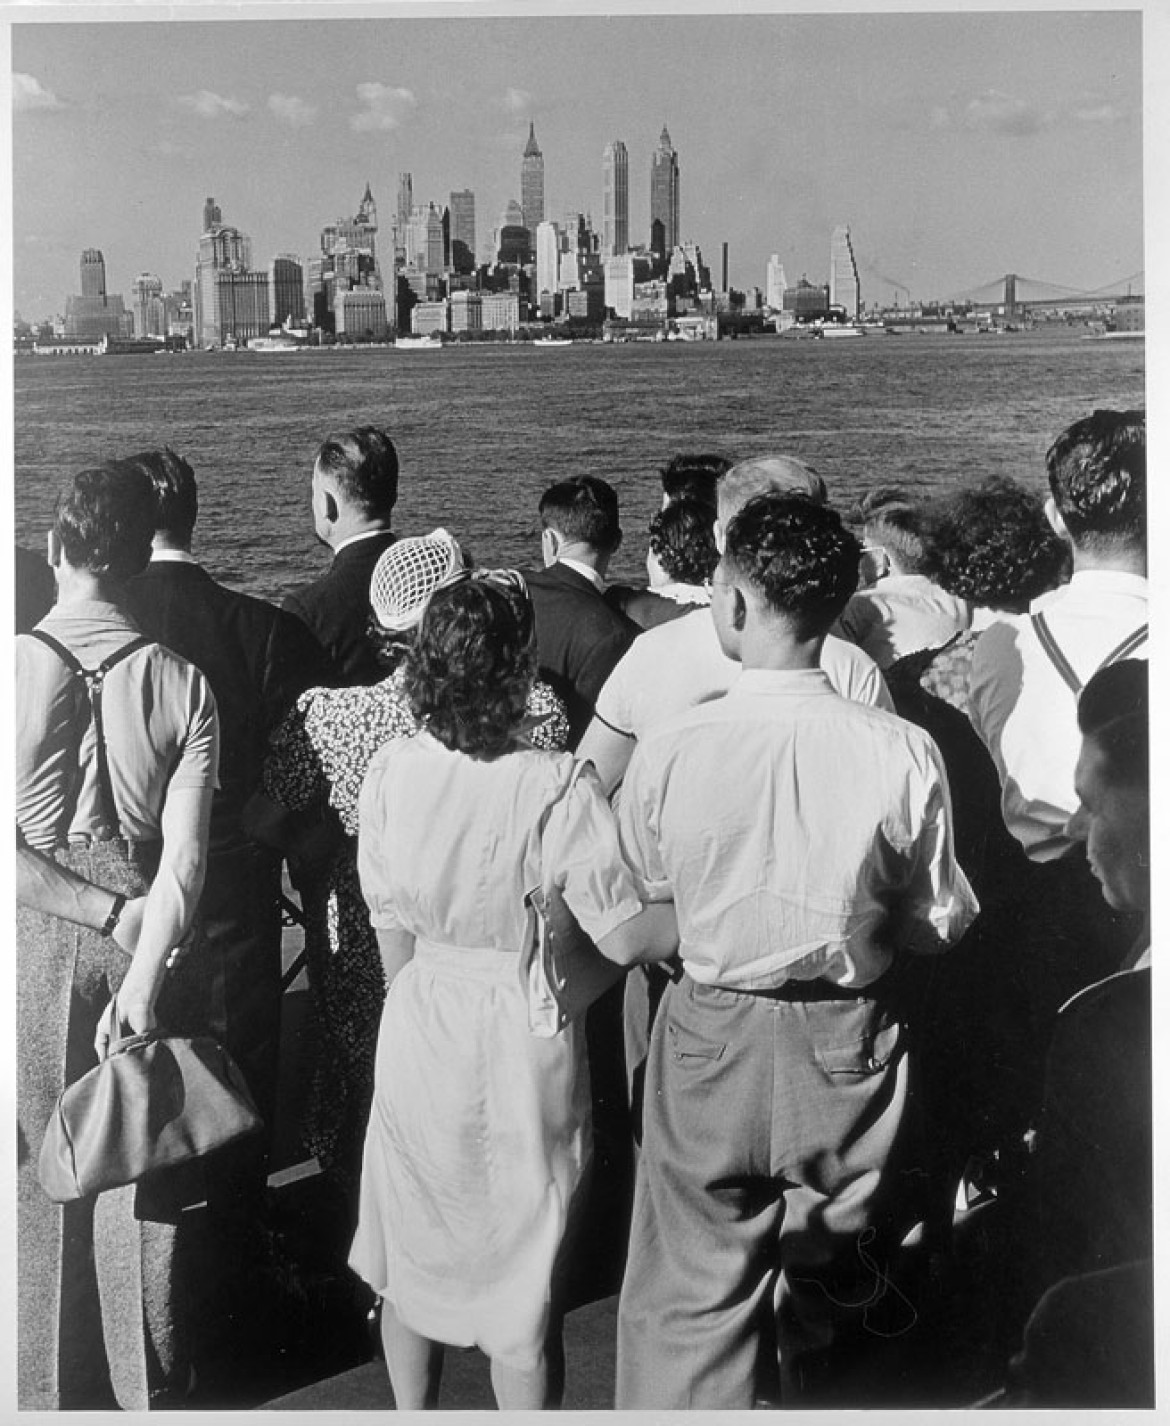 Na promie z New Jersey do Nowego Jorku, 1940 (c) AndreasFeiningerArchive.com